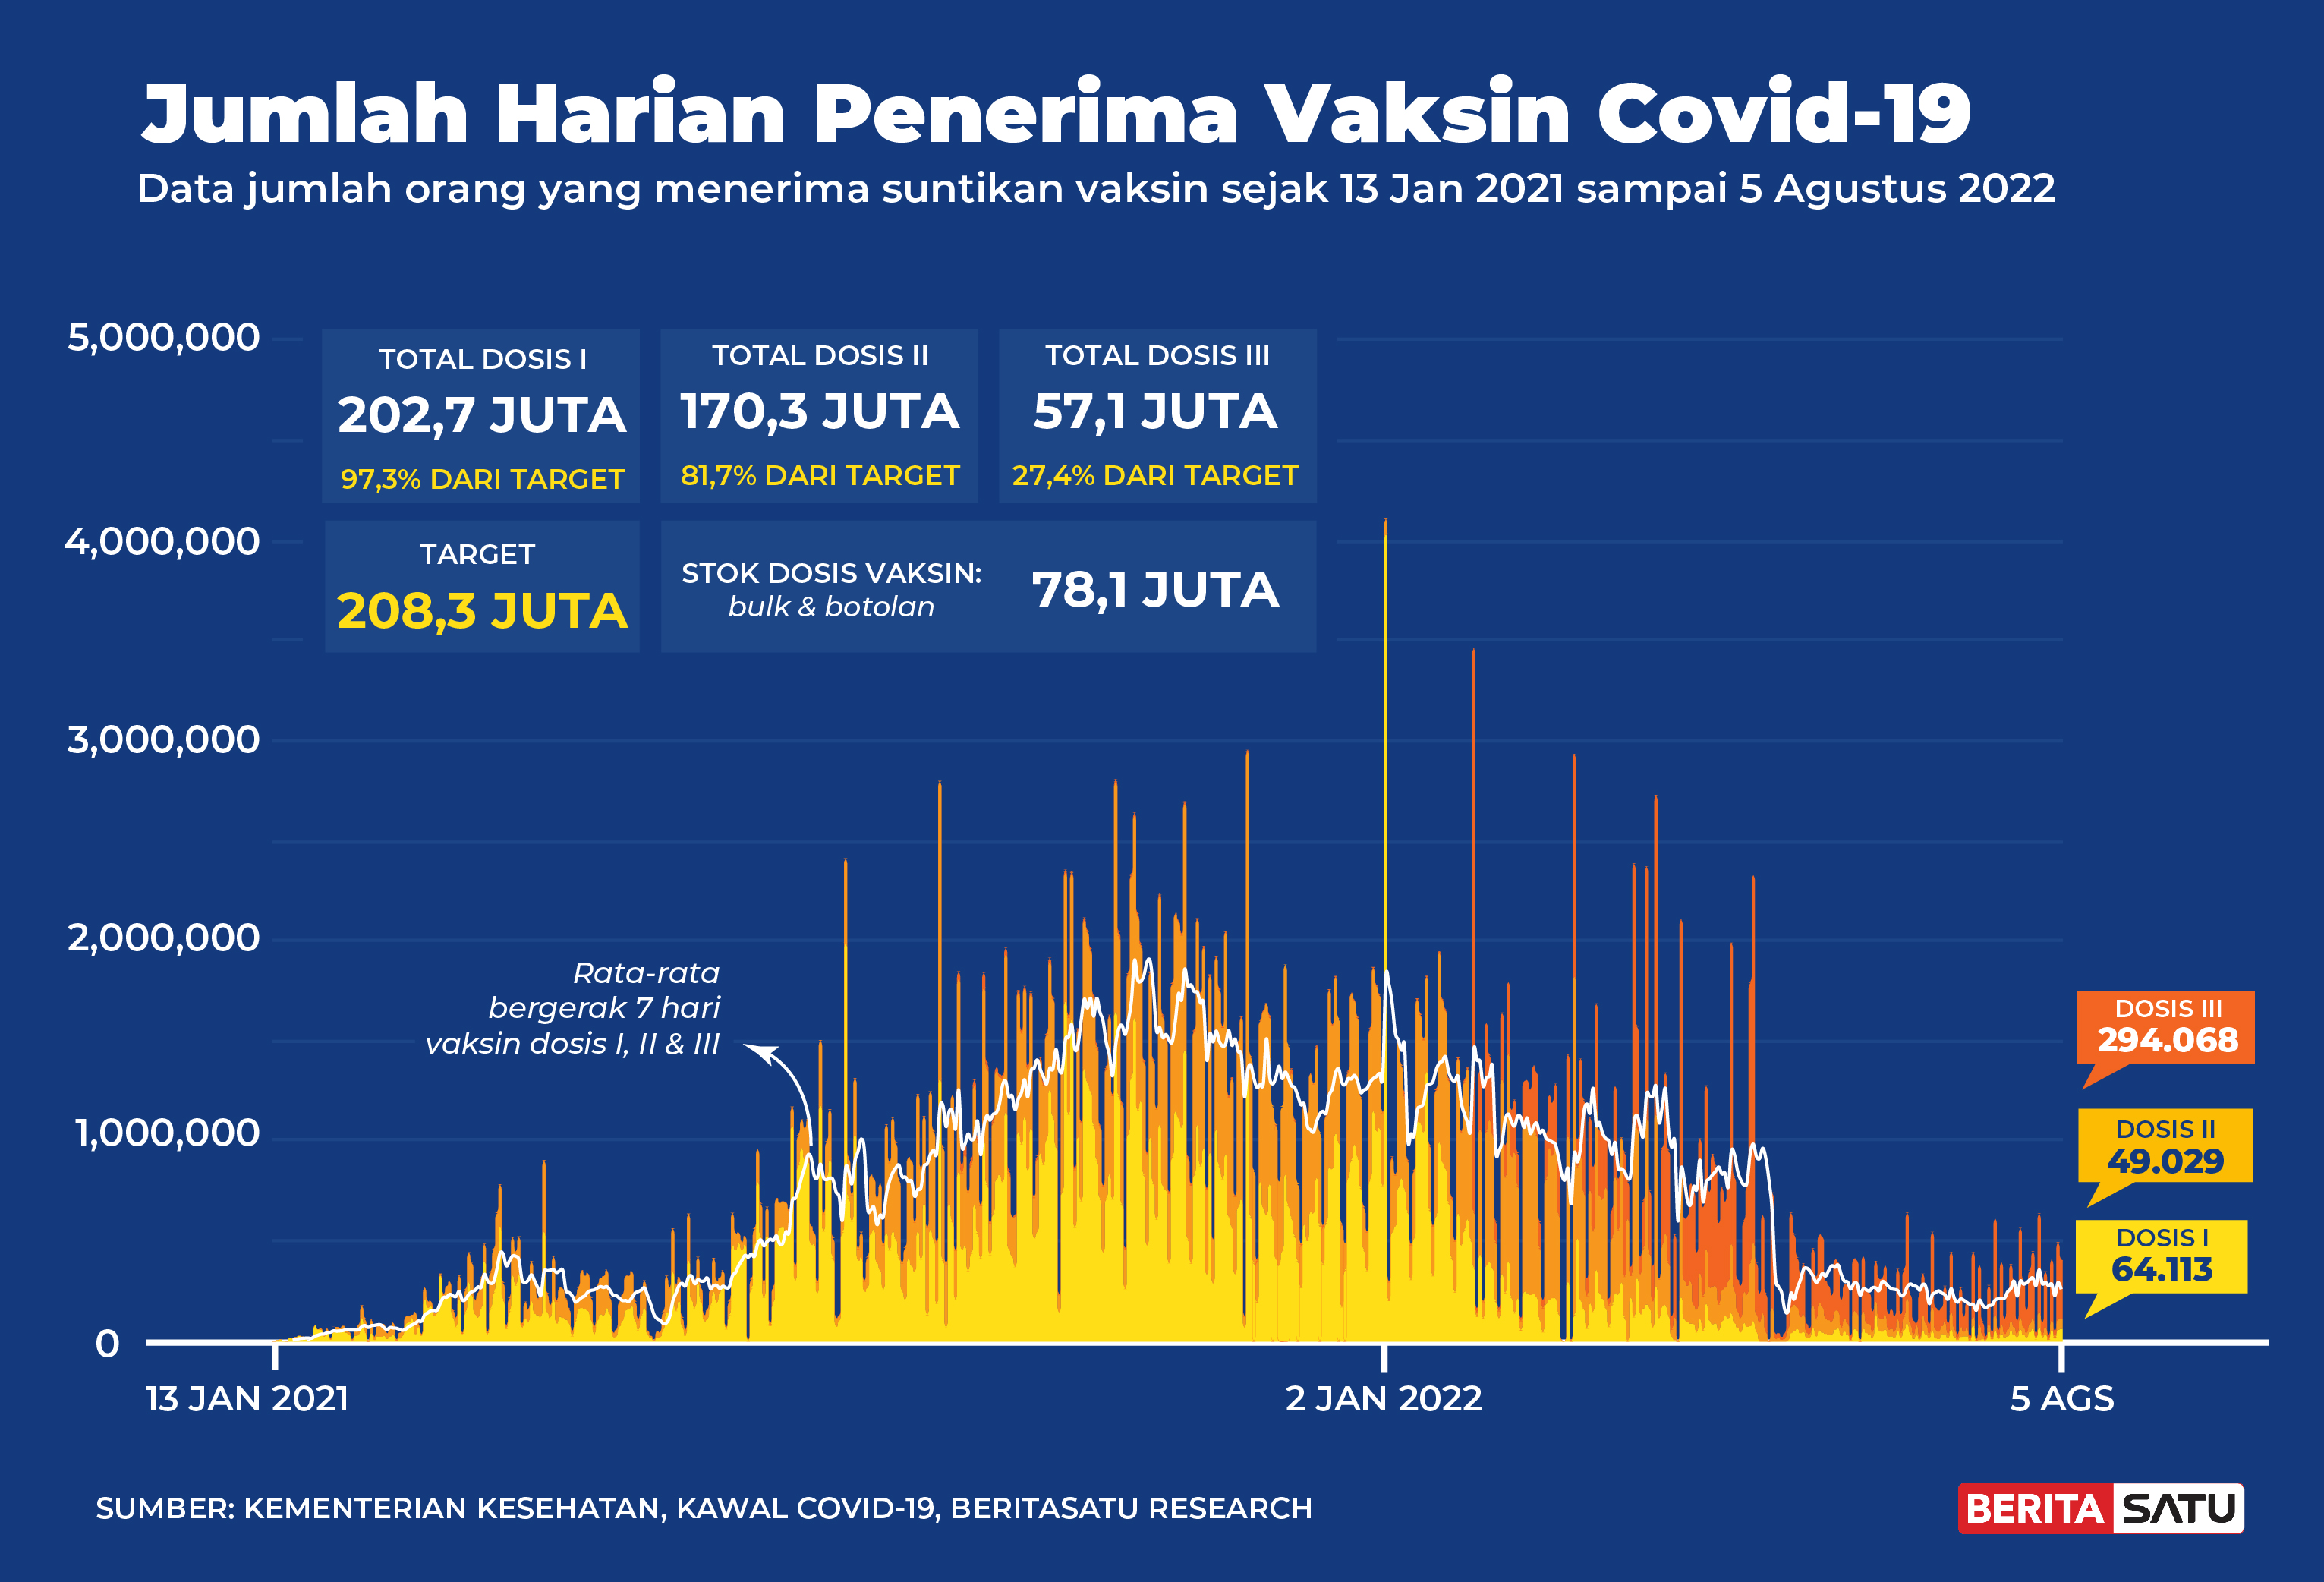 Penerima Vaksin Covid-19 di Indonesia sampai 5 Agustus 2022